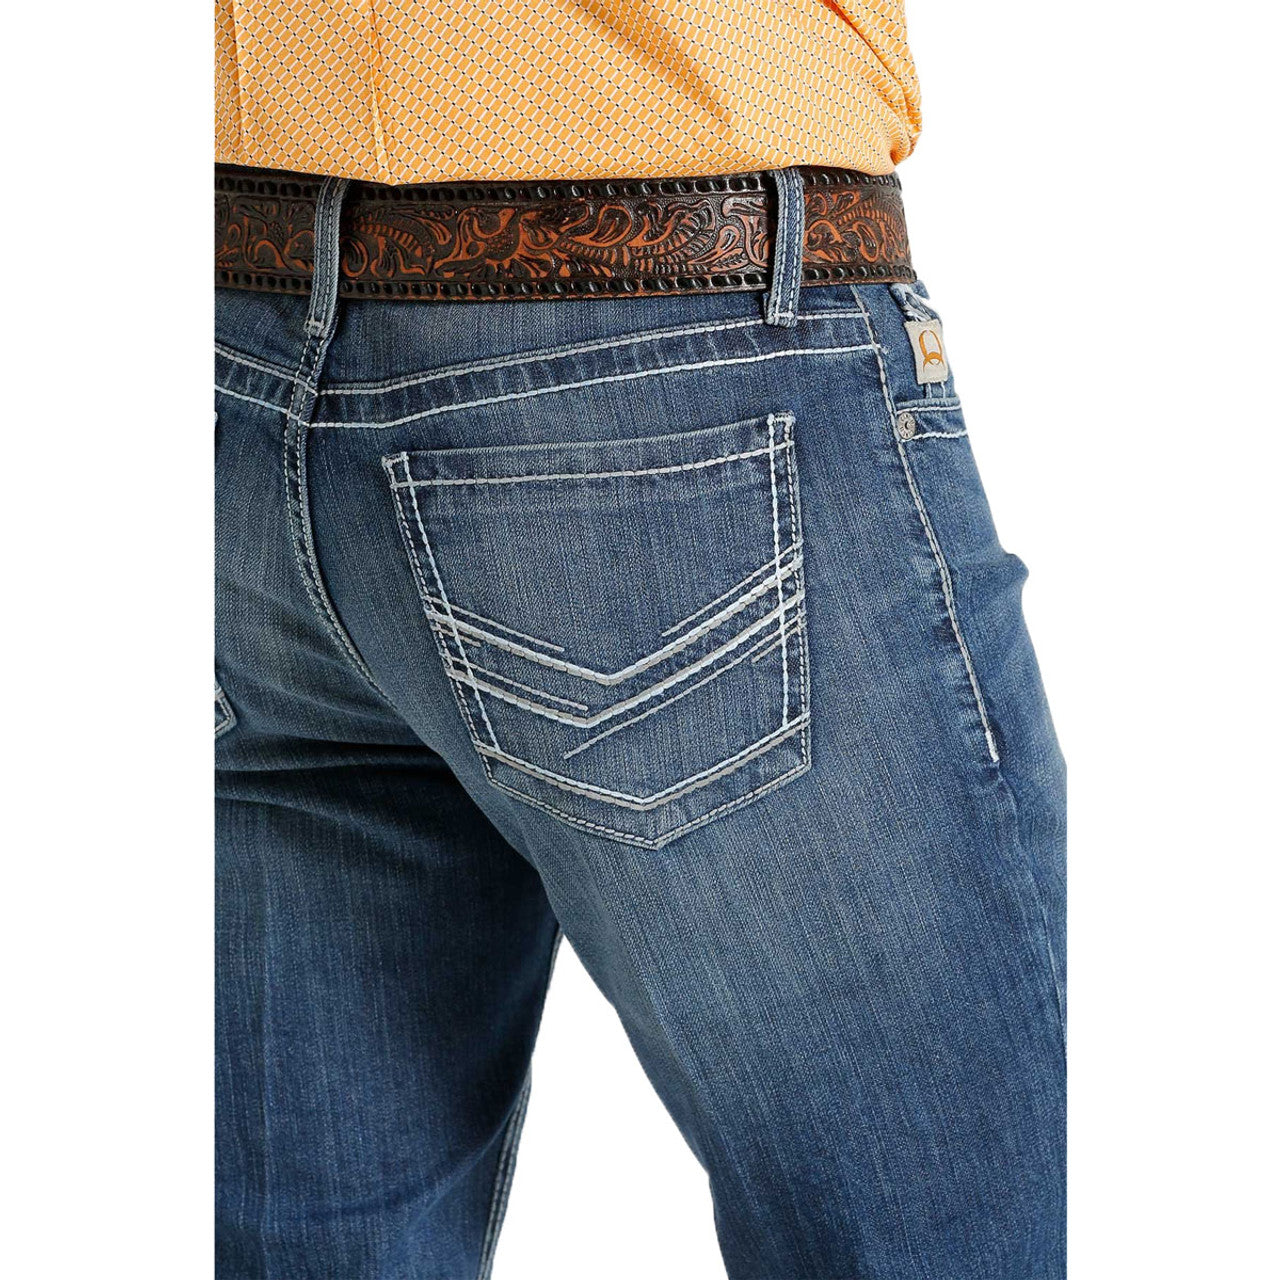 Cinch Men's Ian Slim Fit Boot Cut Straight Denim Jean - MB55836001 - Nate's Western Wear